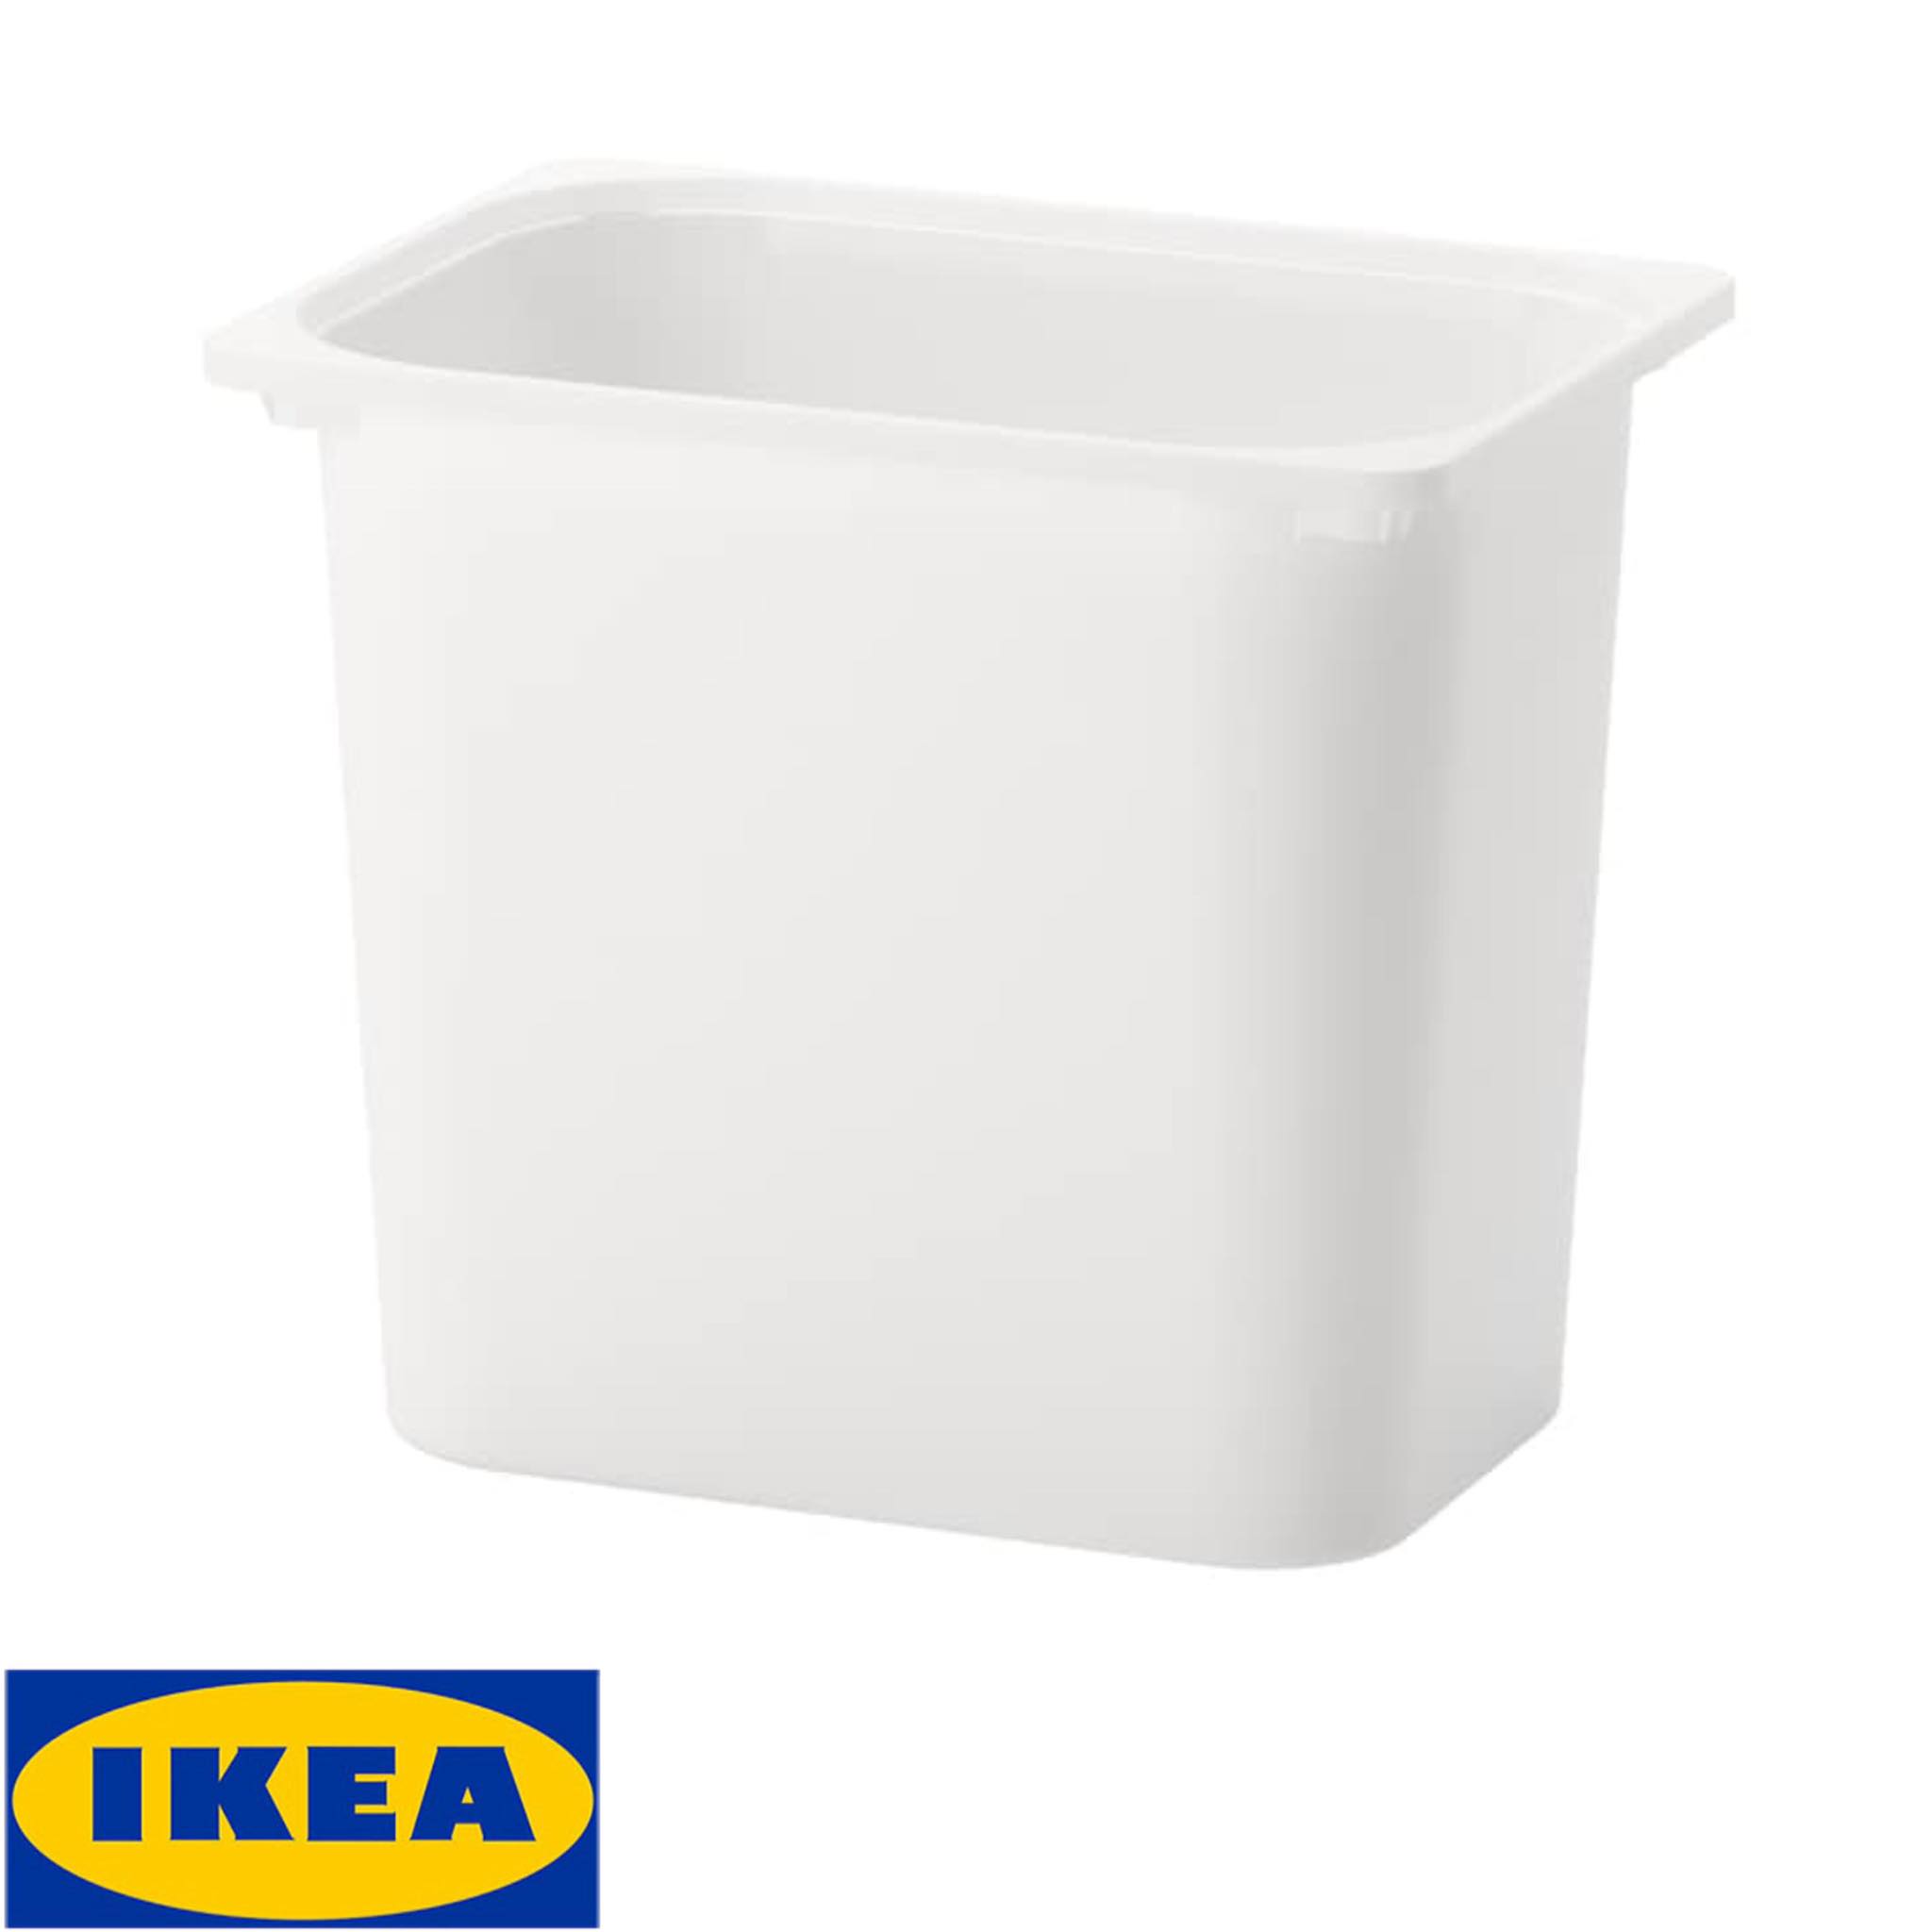 IKEA TROFAST ทรูฟัสท์ กล่องเก็บของ, ขาว42x30x36 ซม.